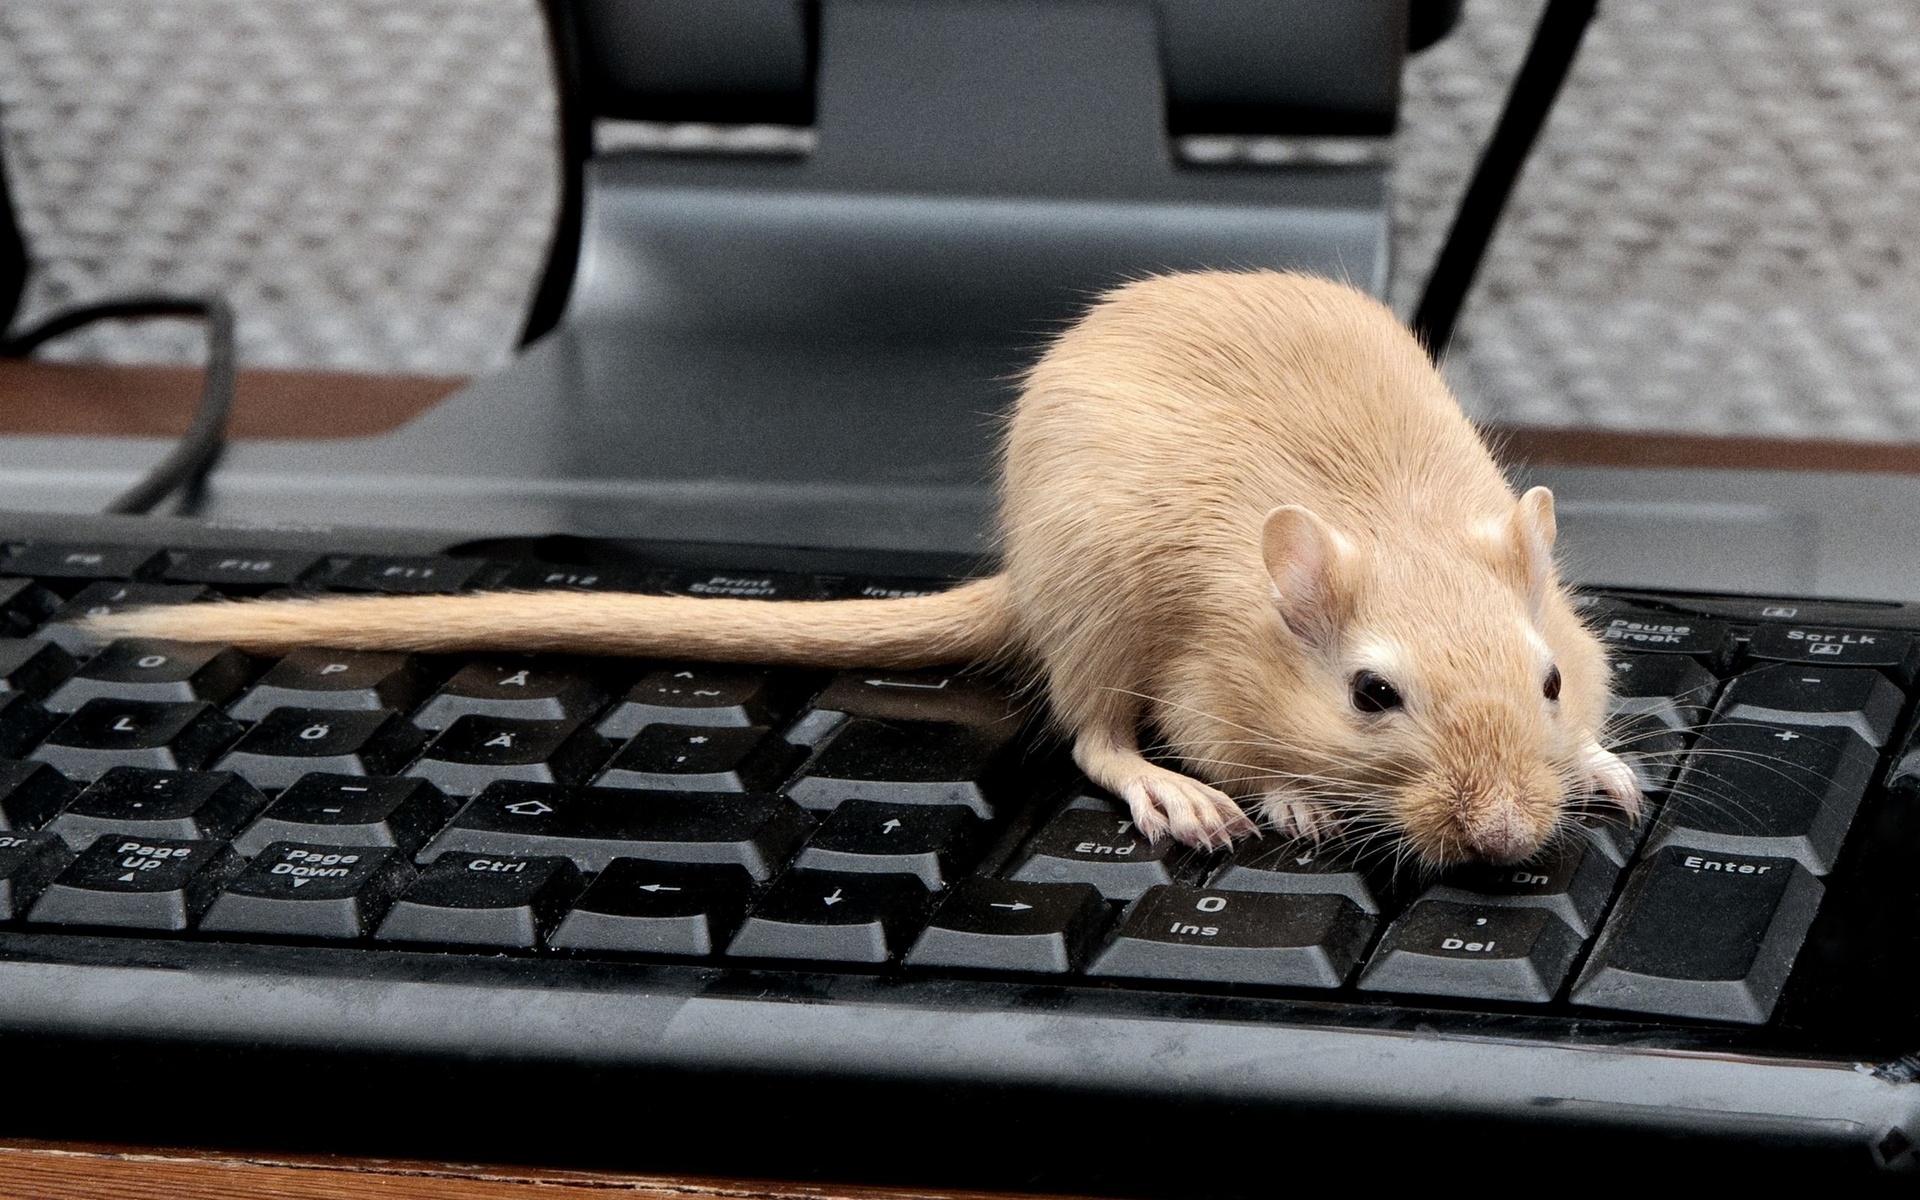 мышь не работает на коврике но работает на столе